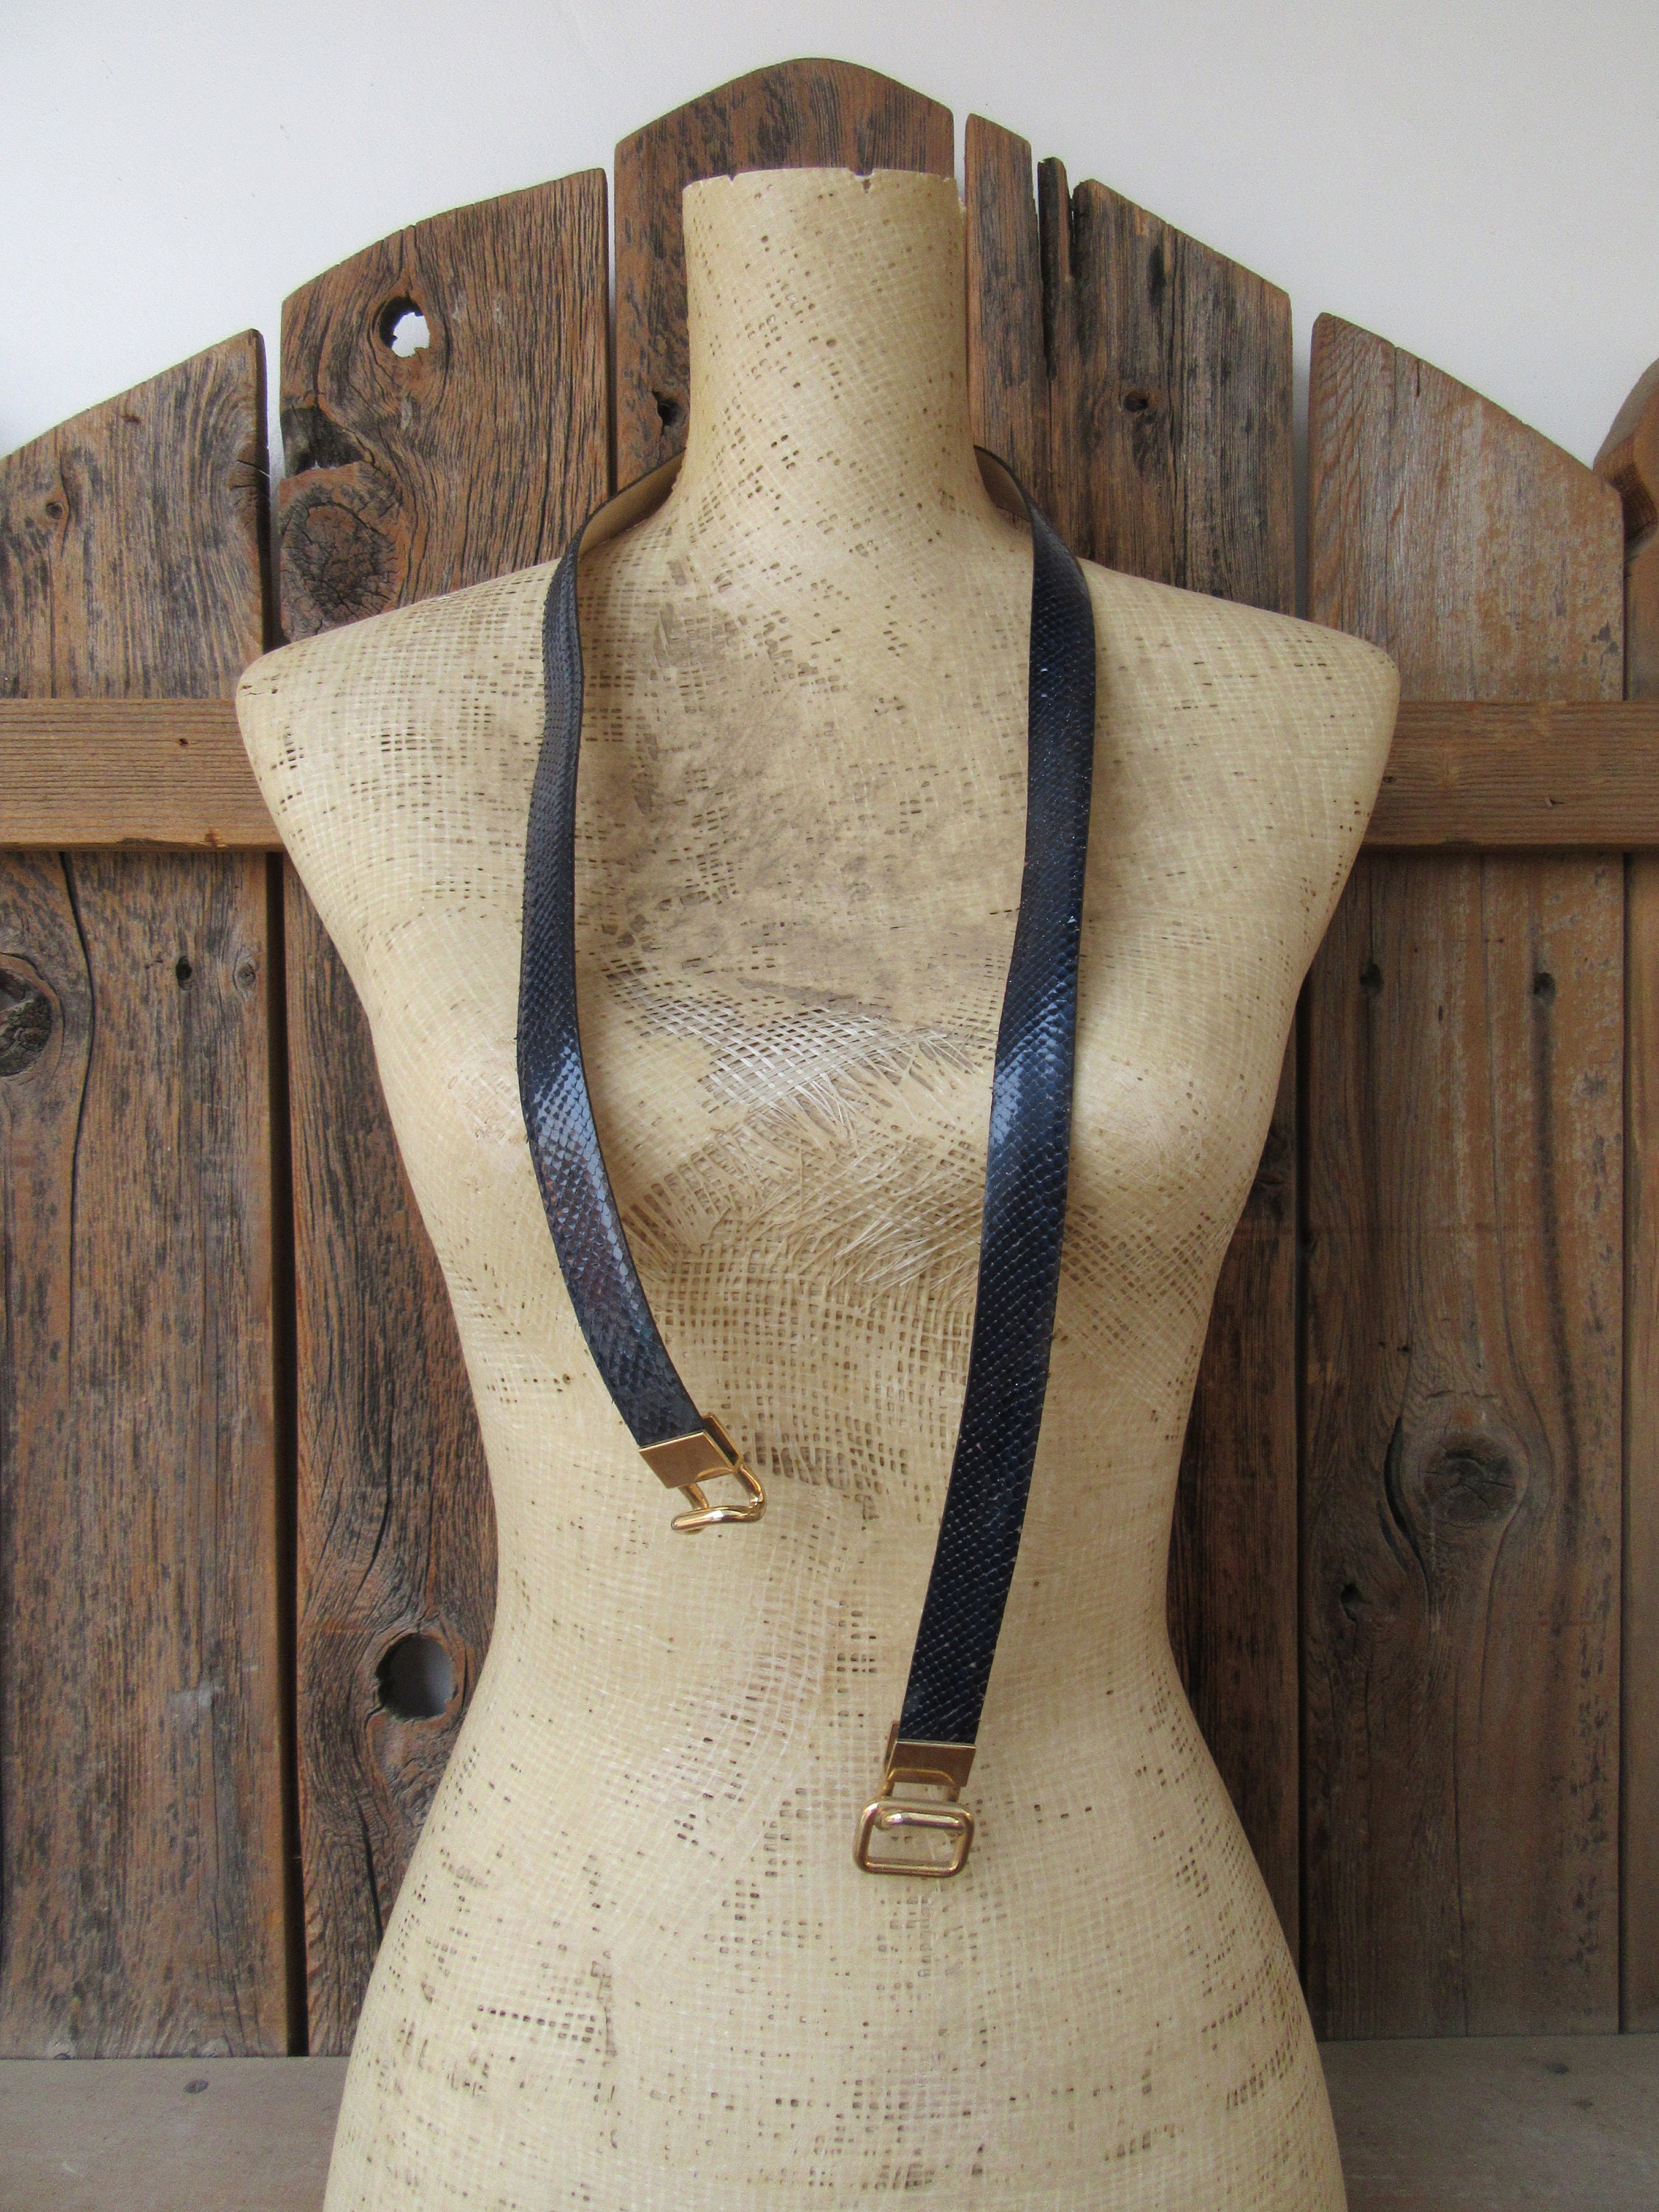 80s Faux Leather Chain Detail Skinny Trouser Belt S 24.5 to 27.5 Vegan Snakeskin Print Midnight Navy Blue Skinny Belt